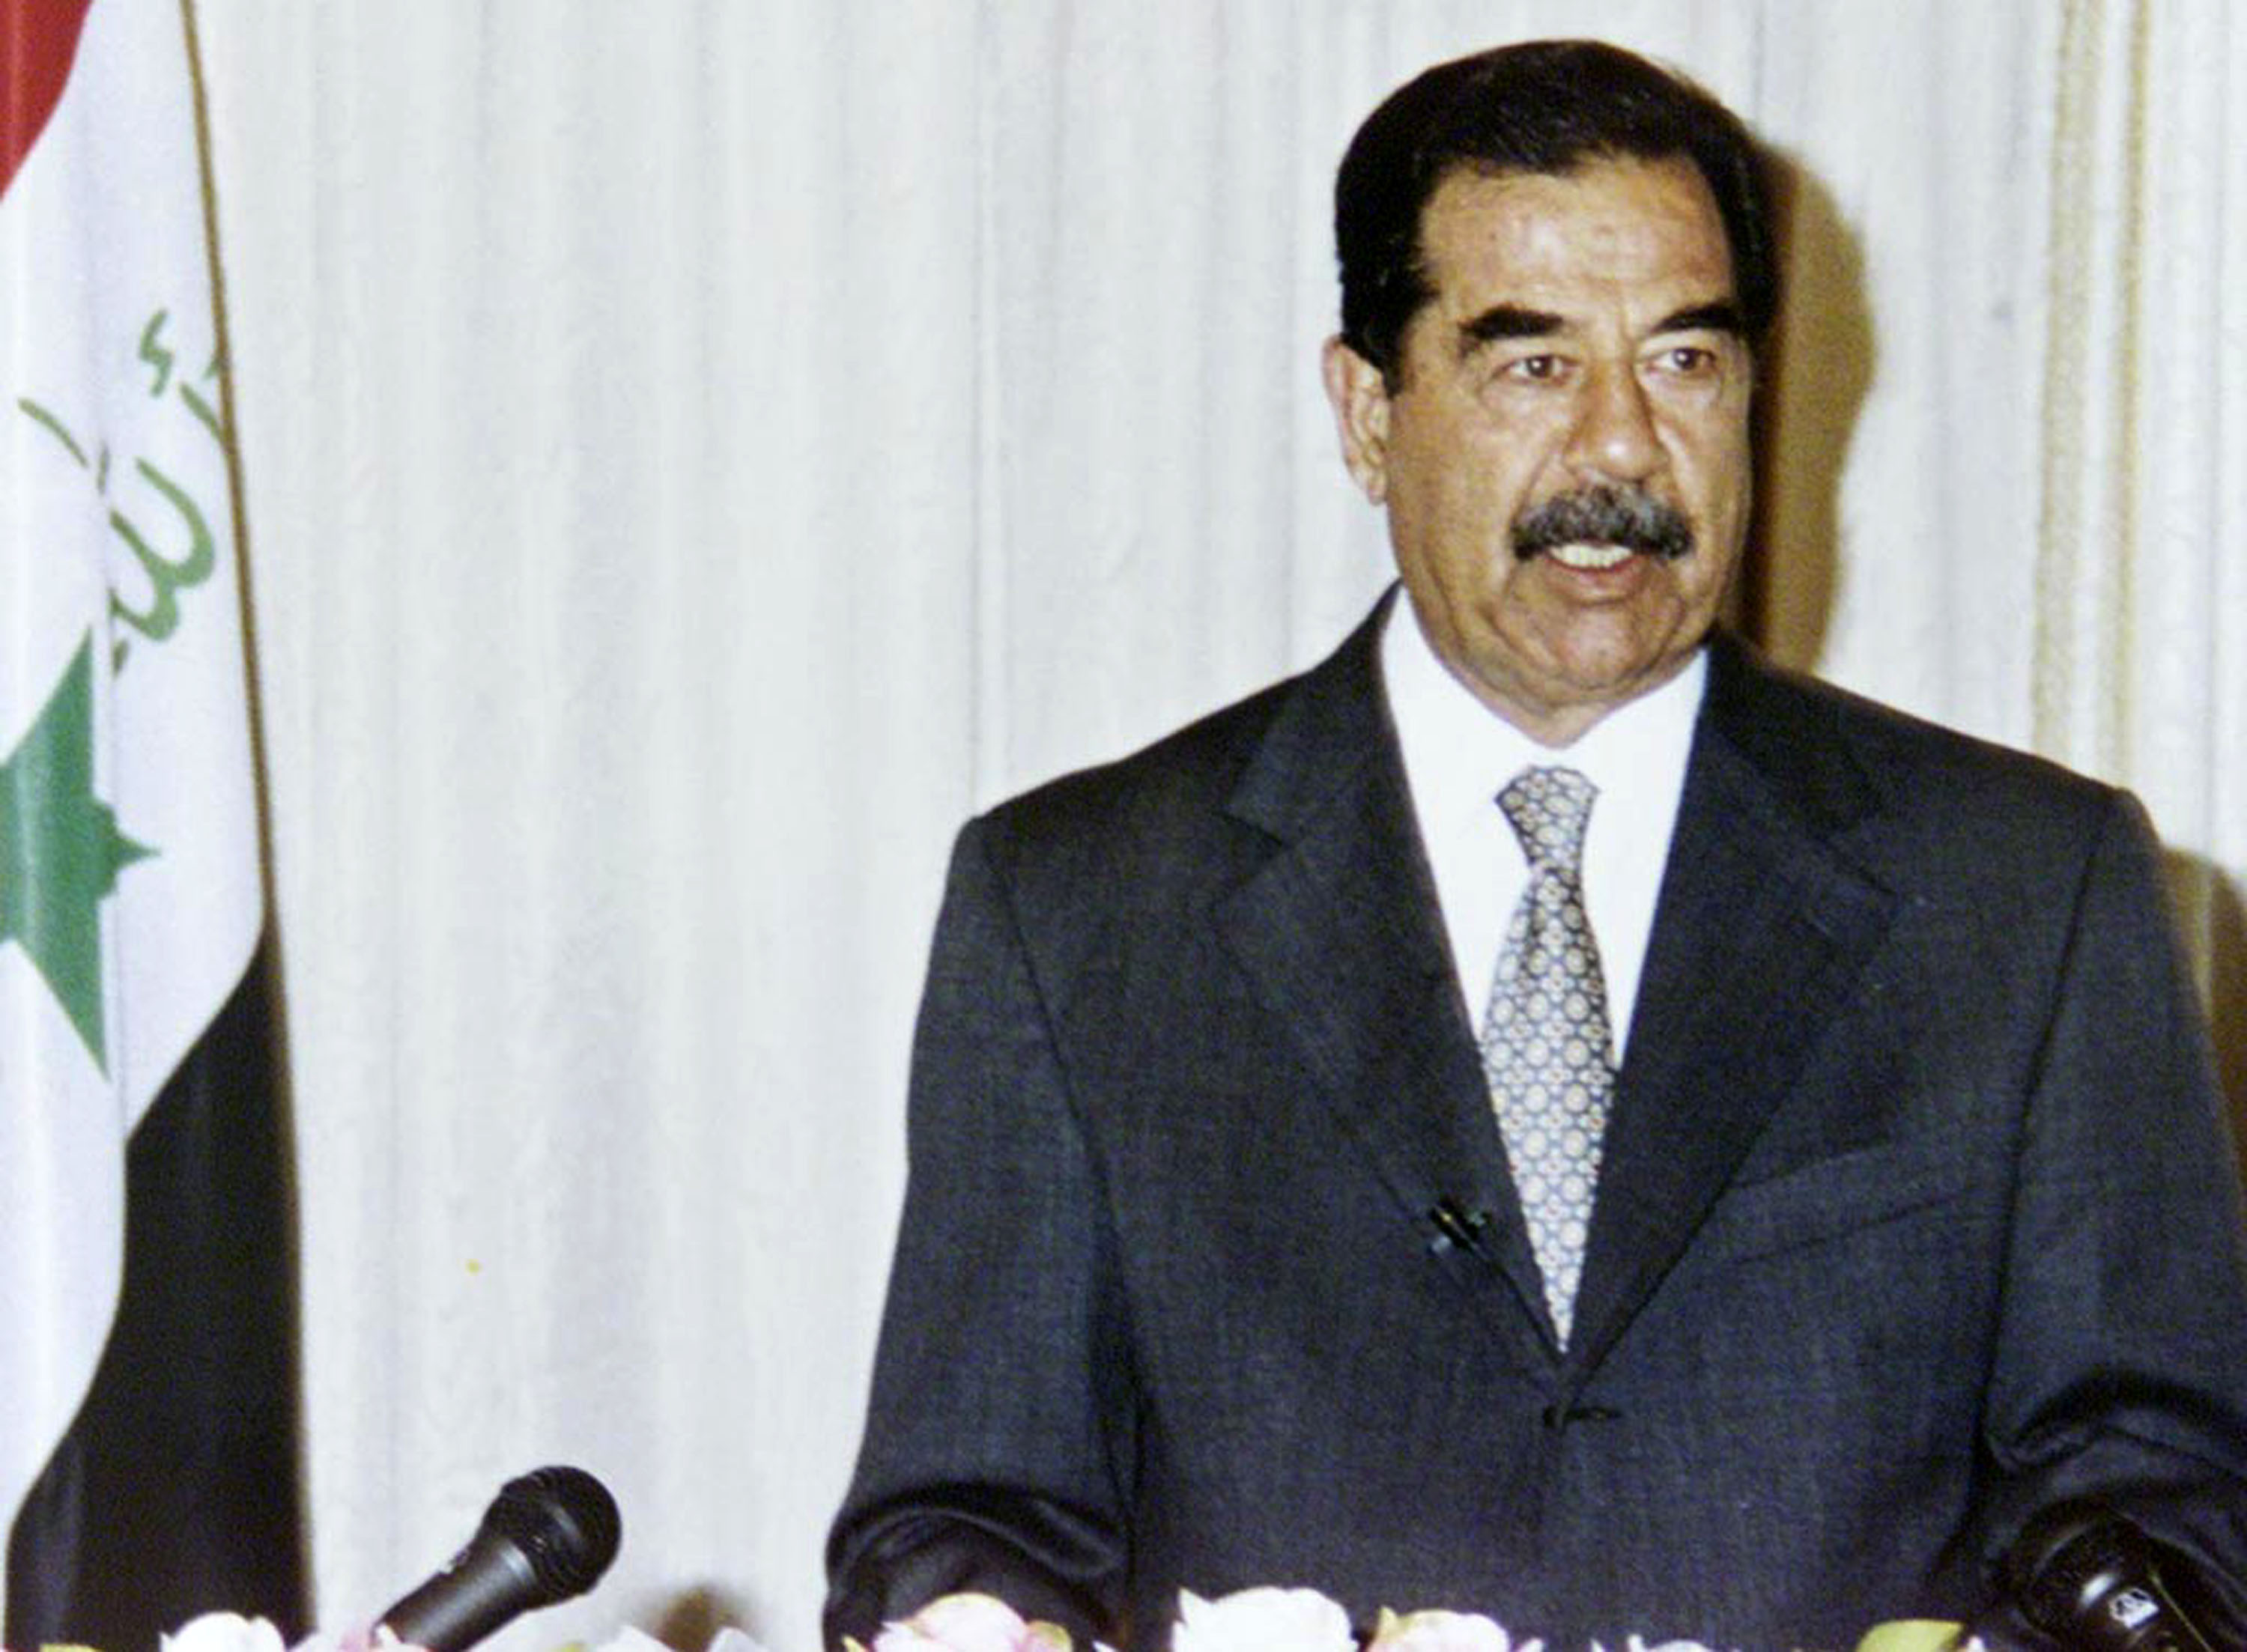 <p>Саддам Хюсеин е начело на Ирак между 1979 и 2003 г. Той обичал прясно и нетлъсто месо, както и пресни скариди и маслини, донесени направо от Голанските възвишения, а любимото му ястие било риба на пещ (masguf) - можел да я яде по всяко време на деня. Освен това той предпочитал възможно най-прясната риба и затова можел да събуди кухненския персонал в 5:00 или 6:00 часа сутринта, за да приготви уловената от него риба. Сред другите любими ястия на иракския президент били предимно местни ястия като бульон от бамя, супа от леща и рибена супа, разпространени в района на Тикрит, където е роден и израснал.</p>